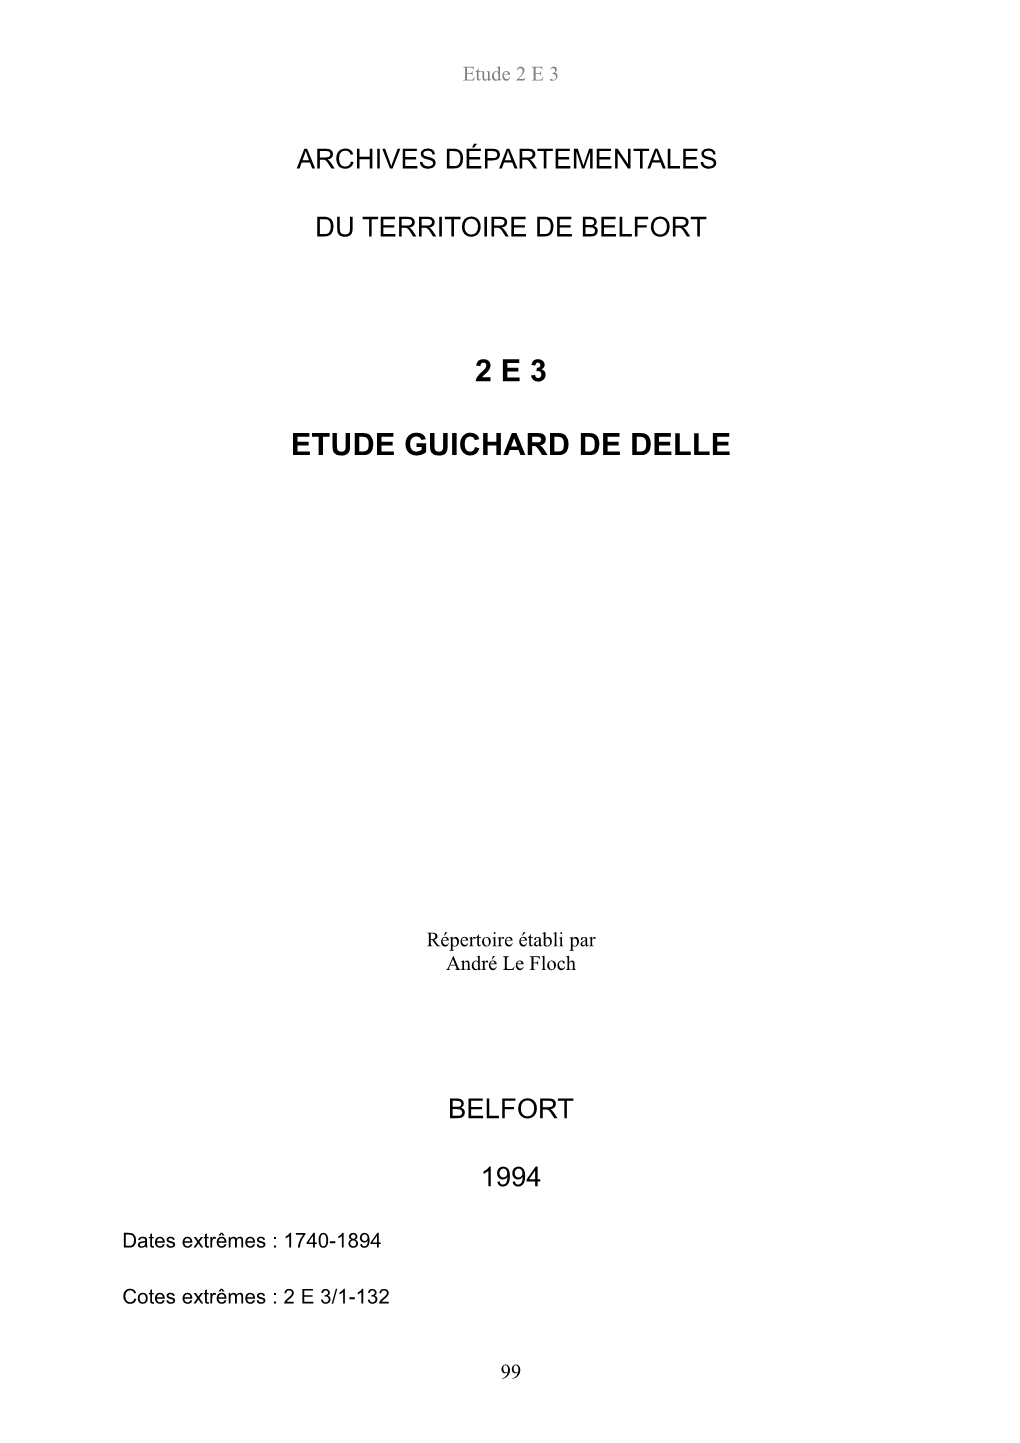 2 E 3 Etude Guichard De Delle